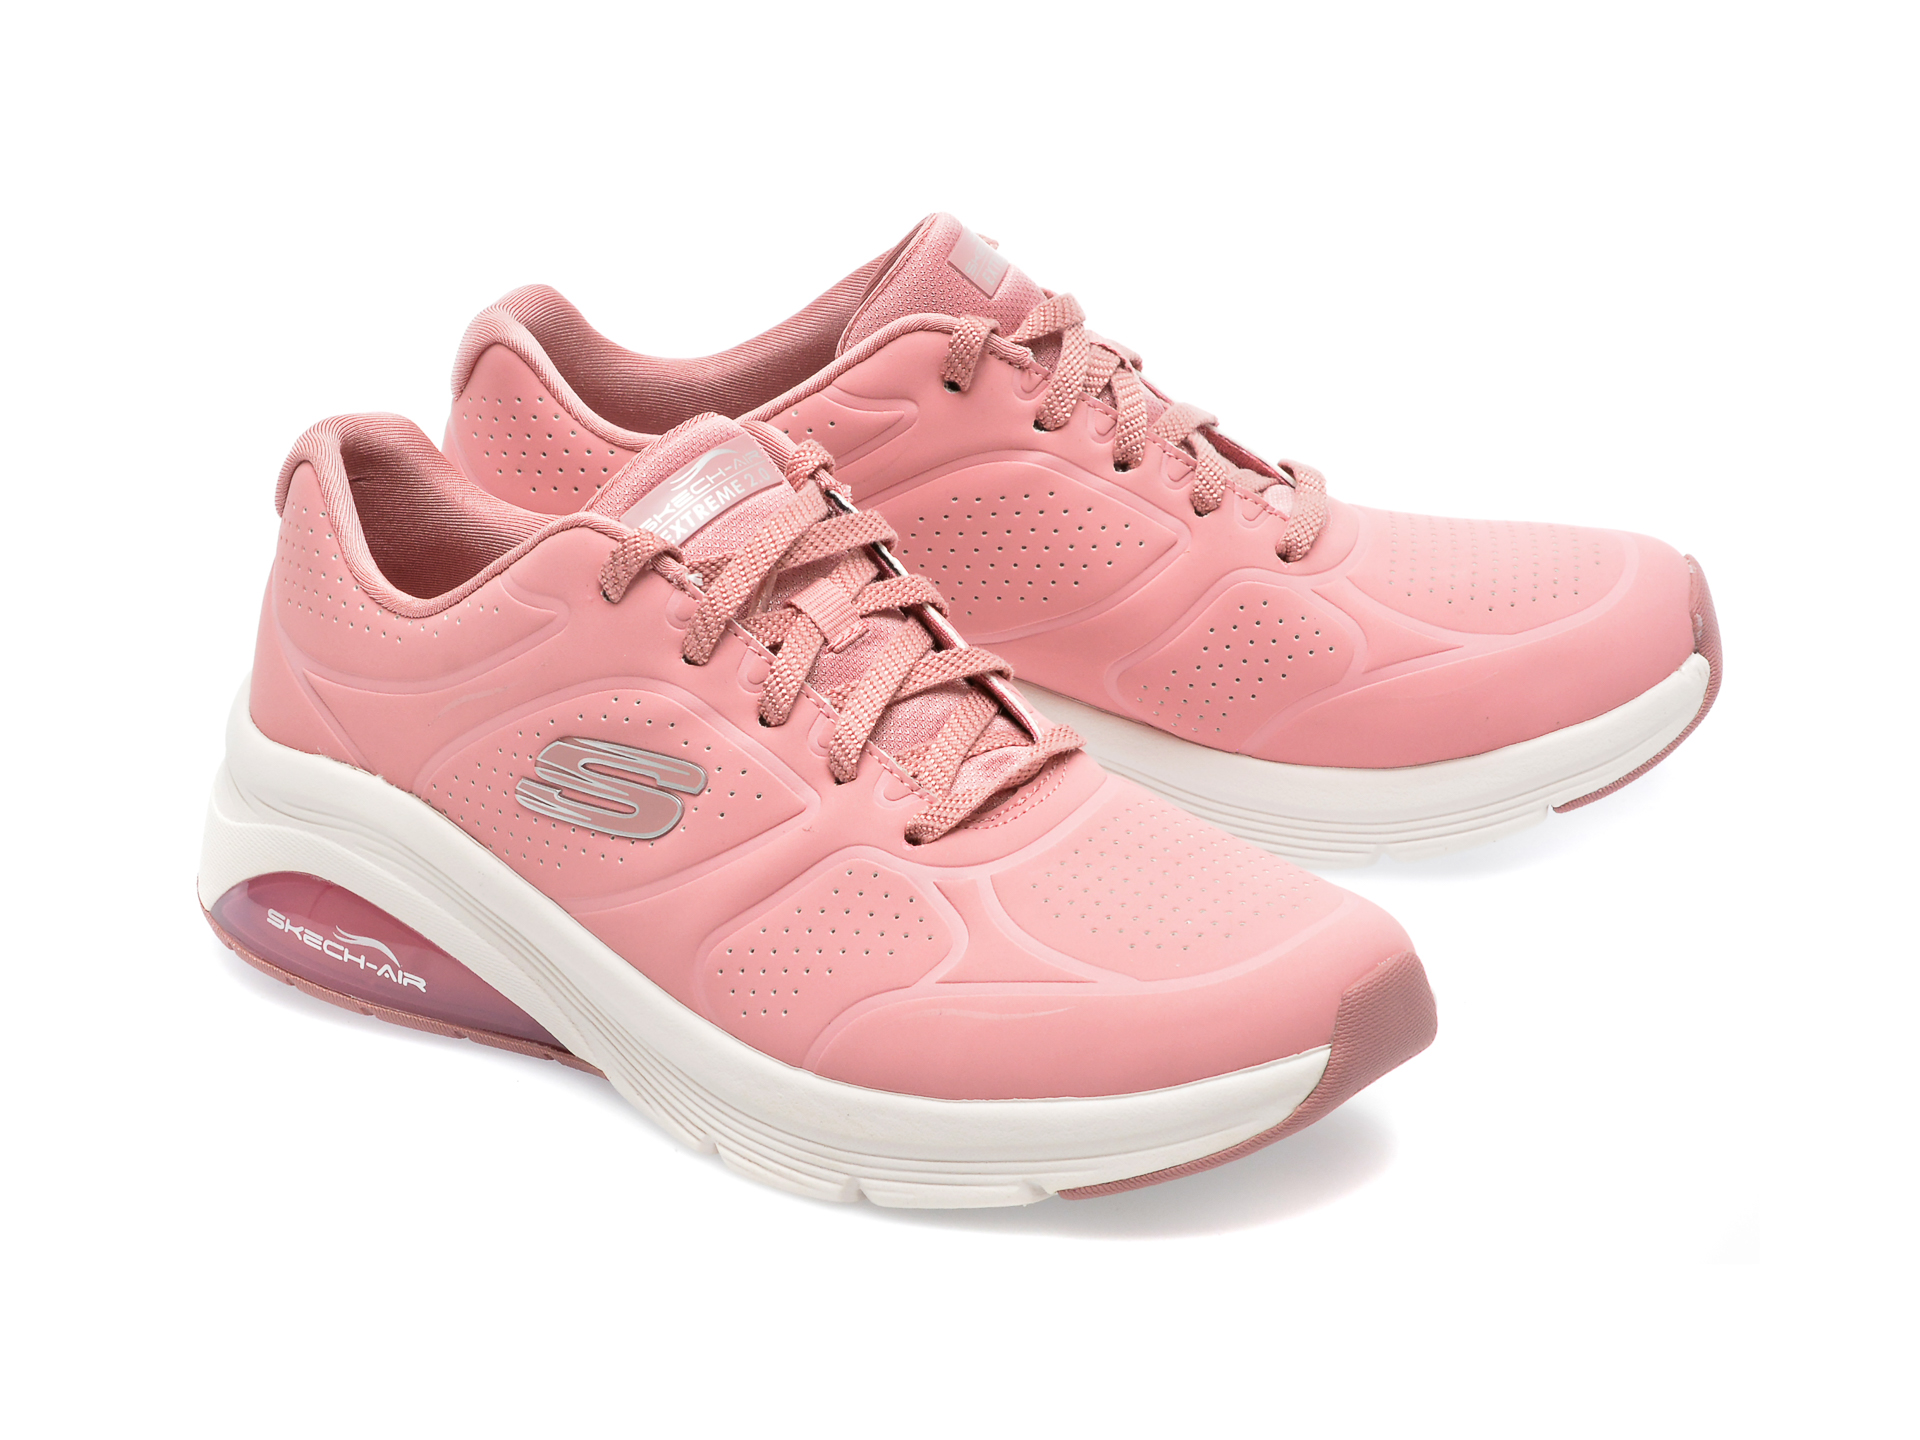 Poze Pantofi sport SKECHERS roz, SKECH-AIR EXTREME 2.0, din piele ecologica Tezyo